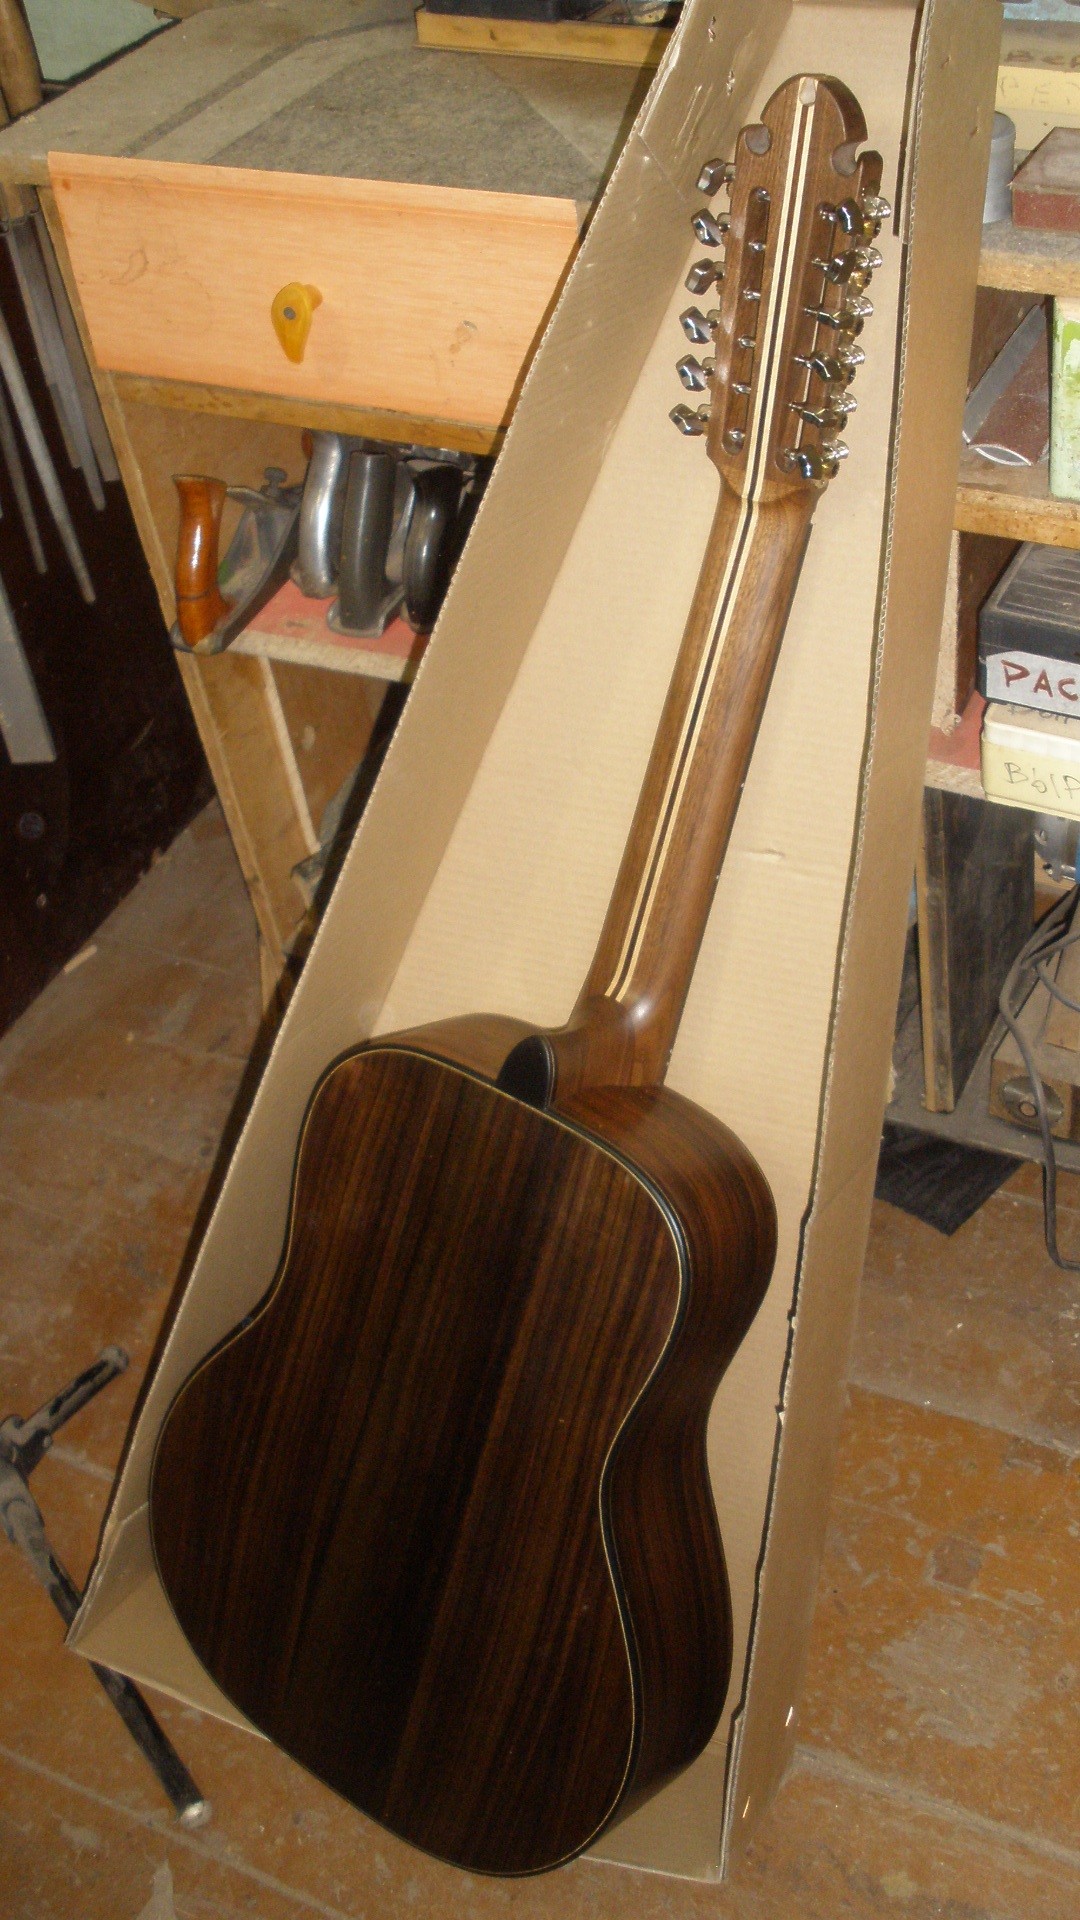 12-струнная гитара, изготовленная на заказ